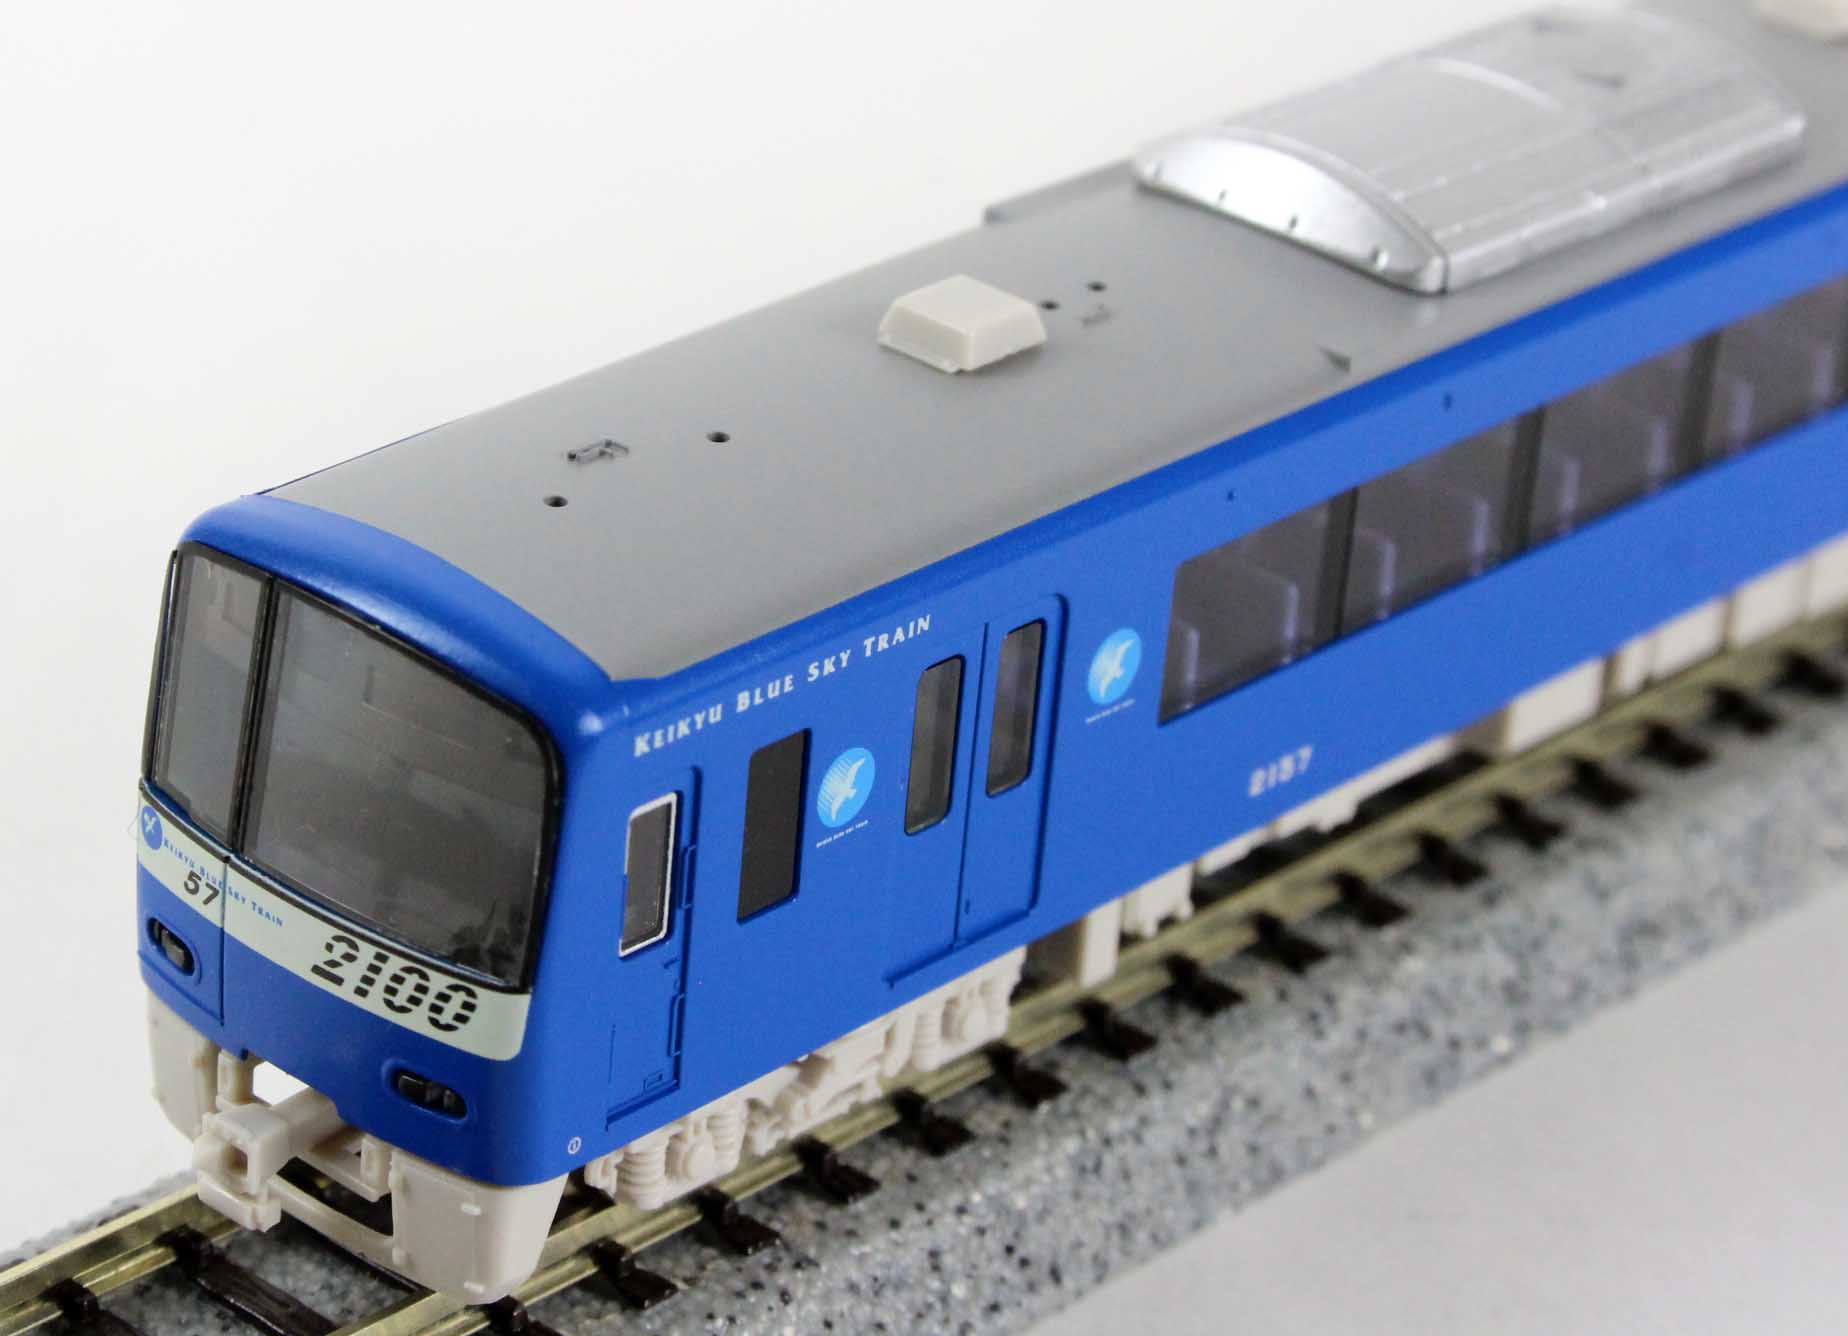 大特価新作京急 2100形 機器更新車 KEIKYU BLUE SKY TRAIN 8輛編成セット(動力付き) Nゲージ 鉄道模型 GREENMAX(グリーンマックス) 私鉄車輌